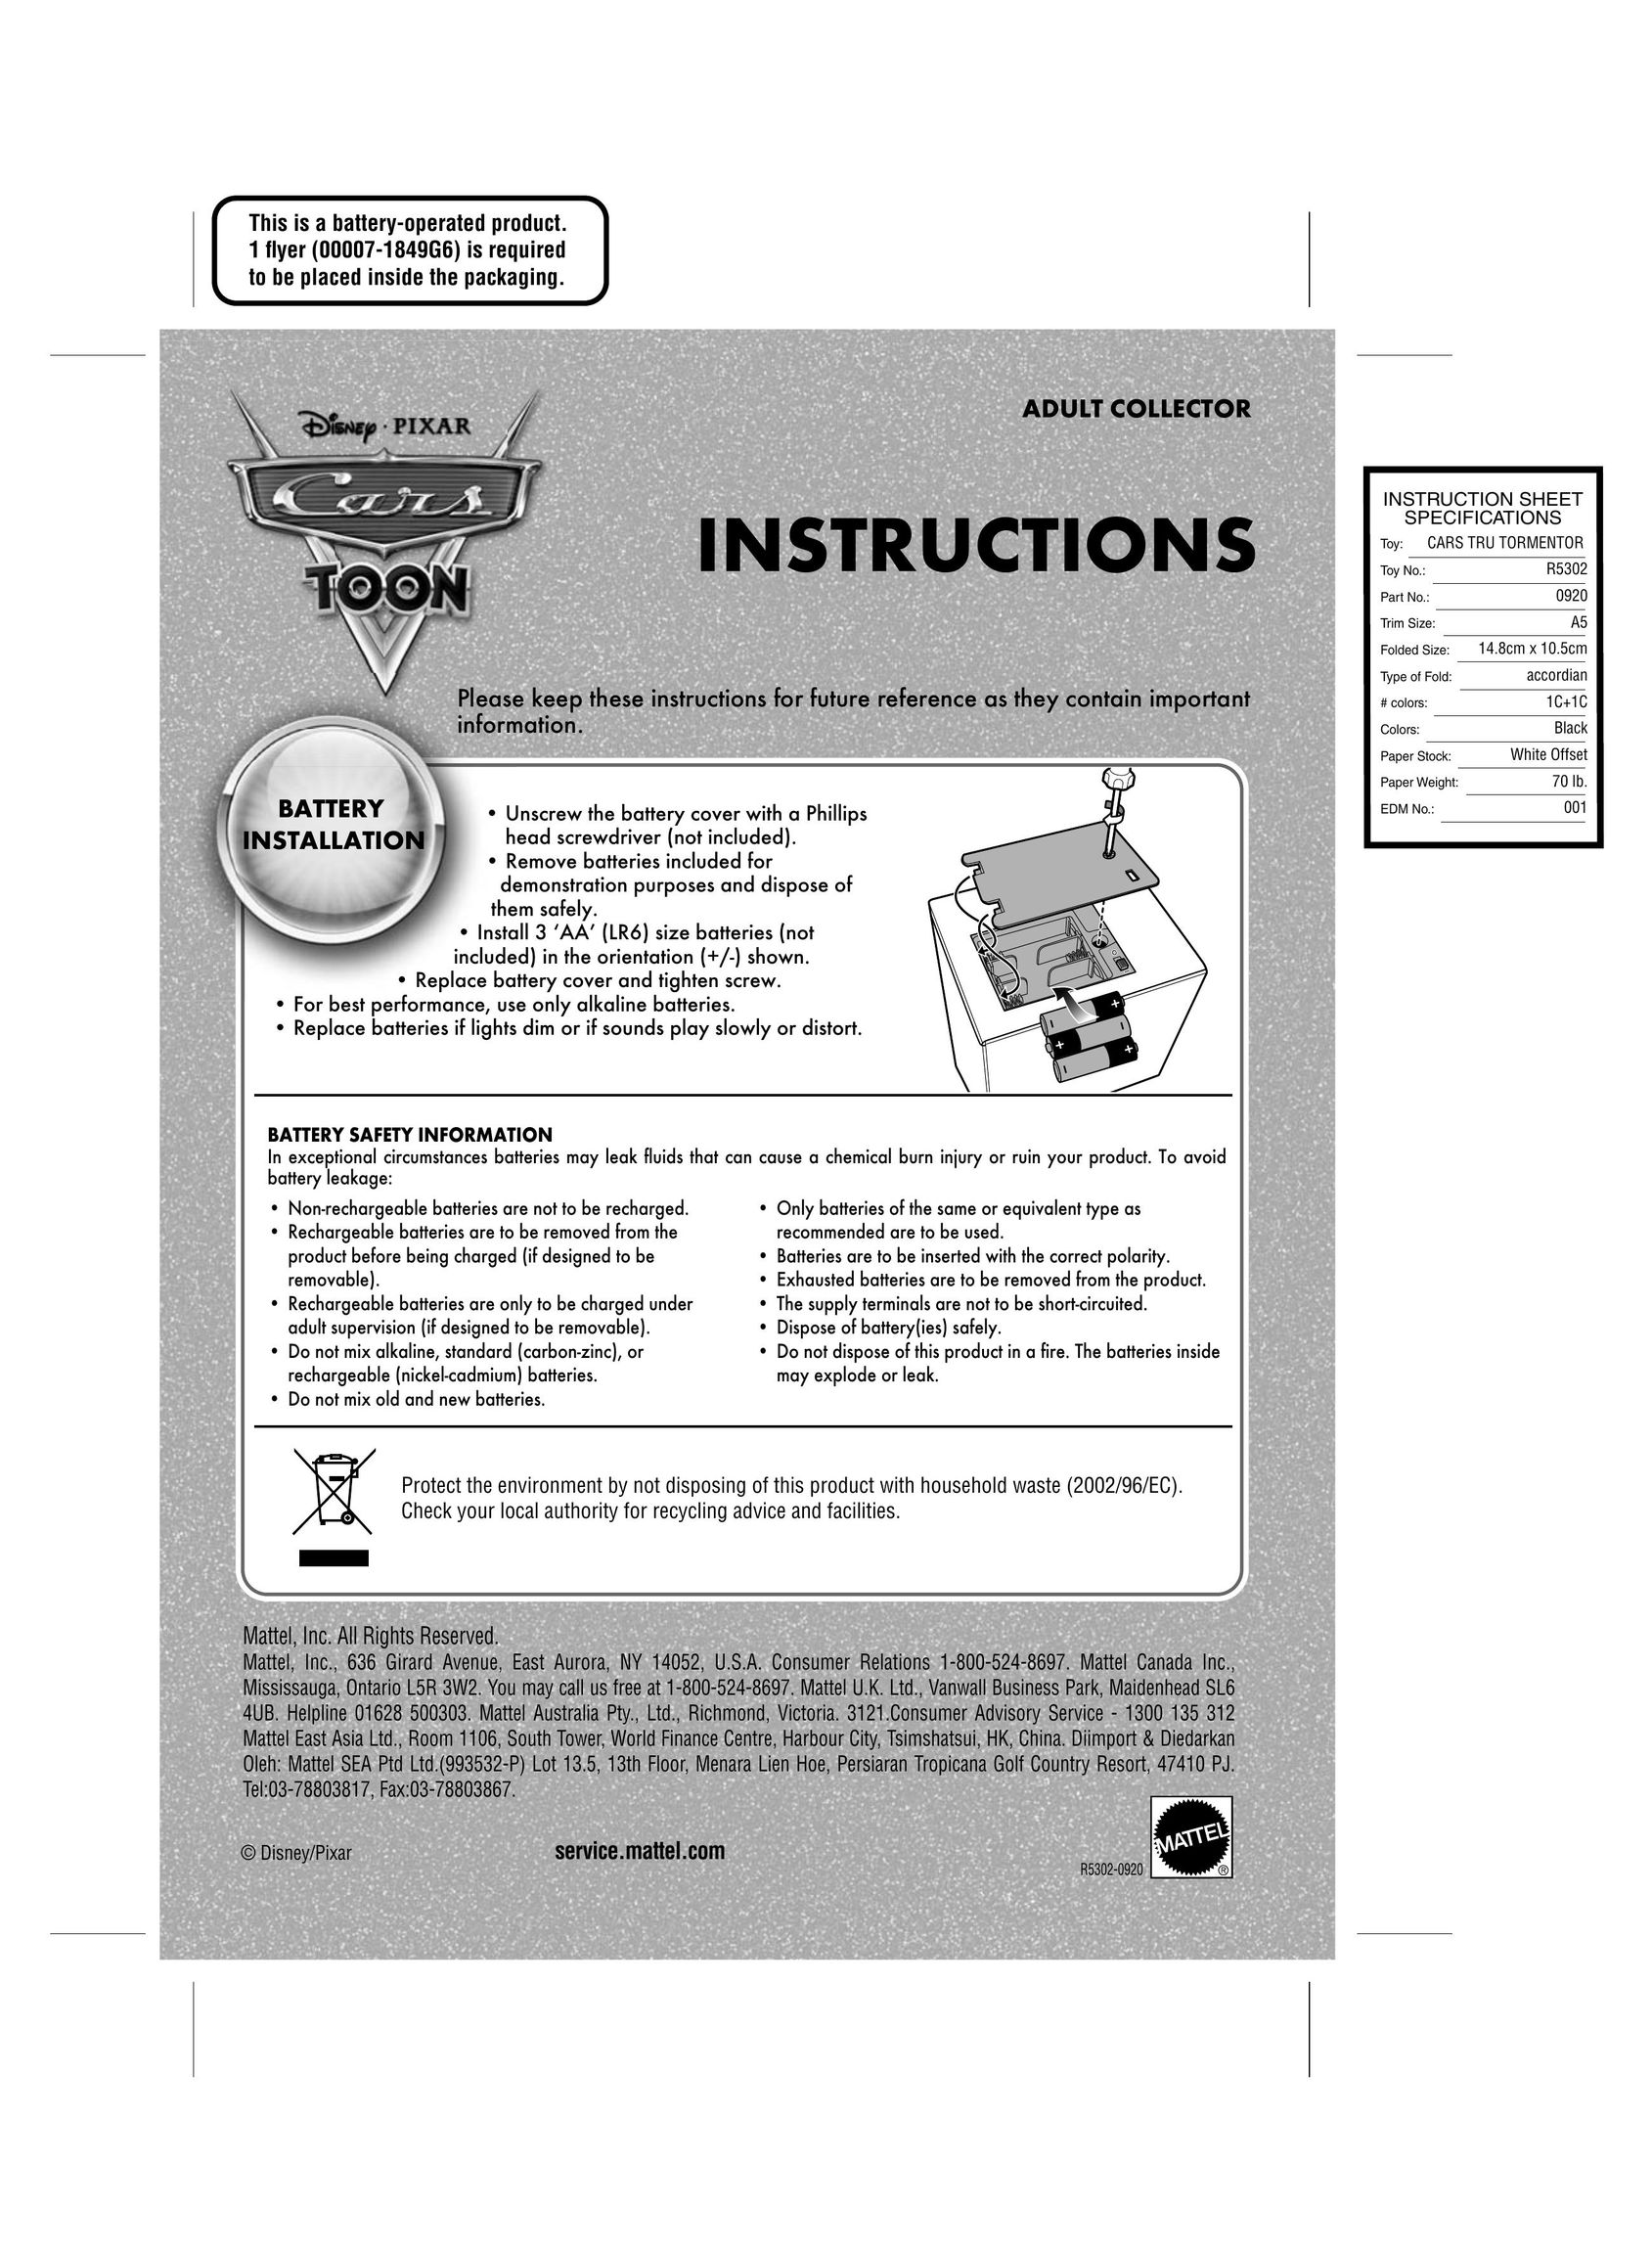 Mattel R5302-0920 Baby Toy User Manual